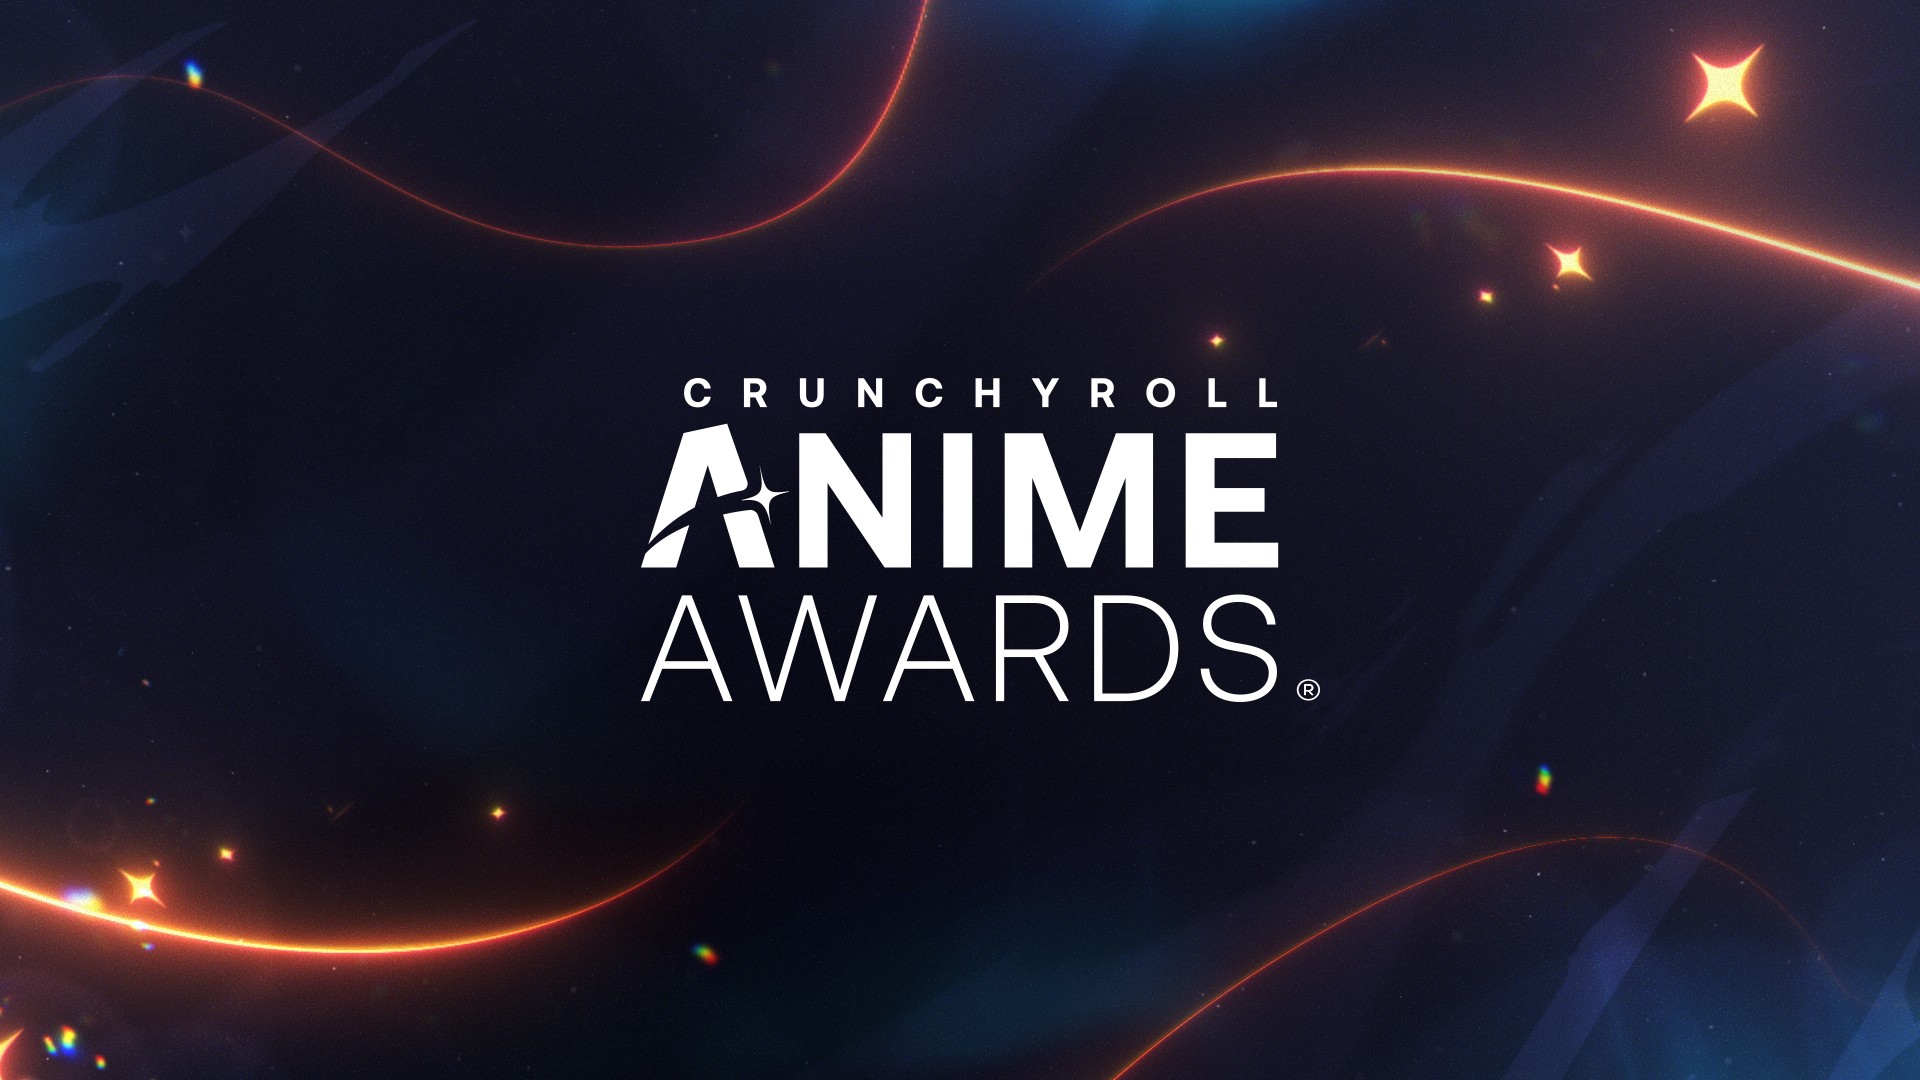 Crunchyroll - Crunchyroll faz mudanças em seus Planos de Assinaturas, faz  reestruturação no Fórum e traz concursos e rankings para seus usuários